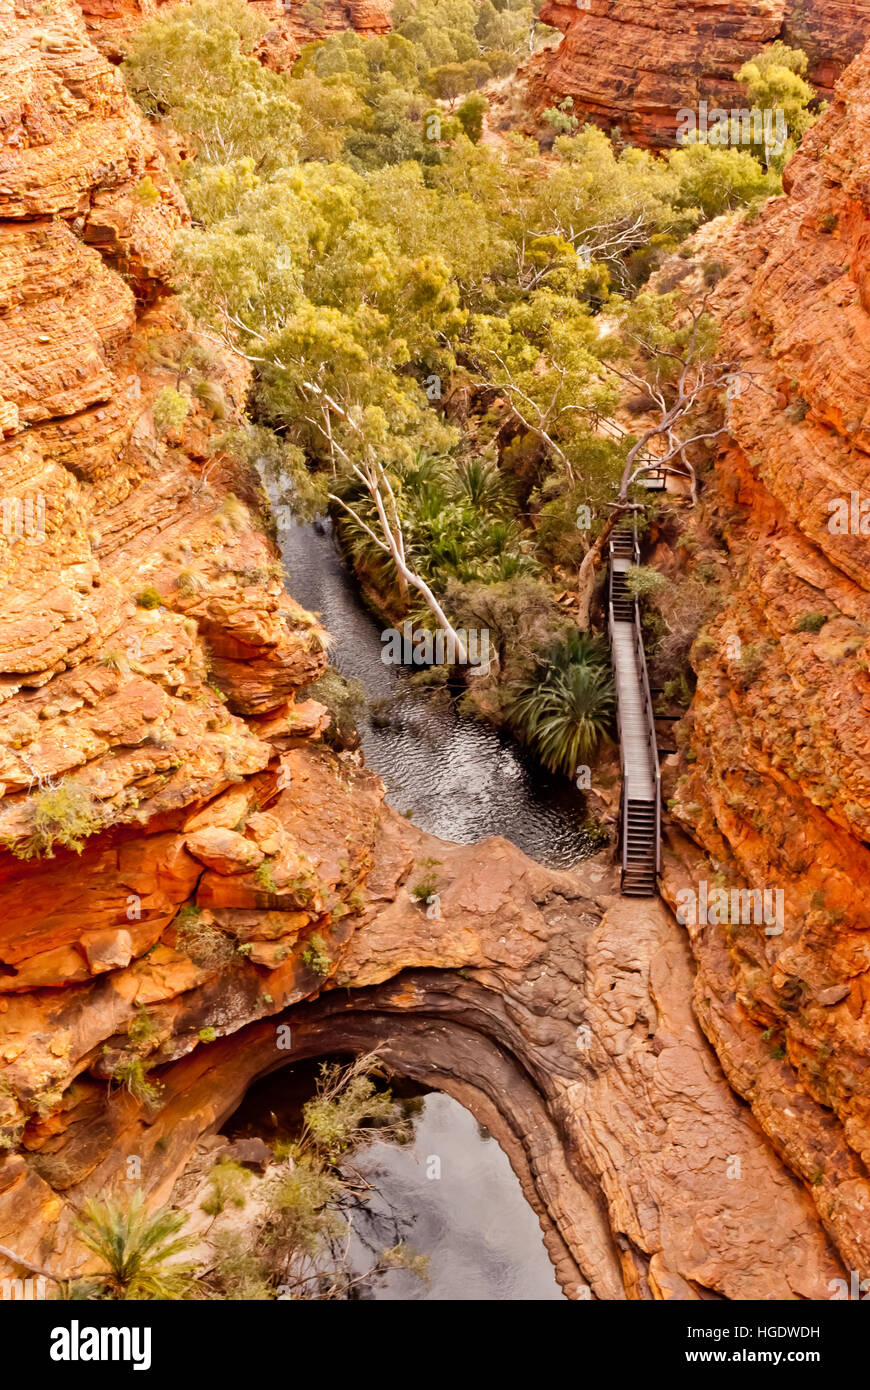 Kings Canyon, Territoire du Nord, Australie Banque D'Images